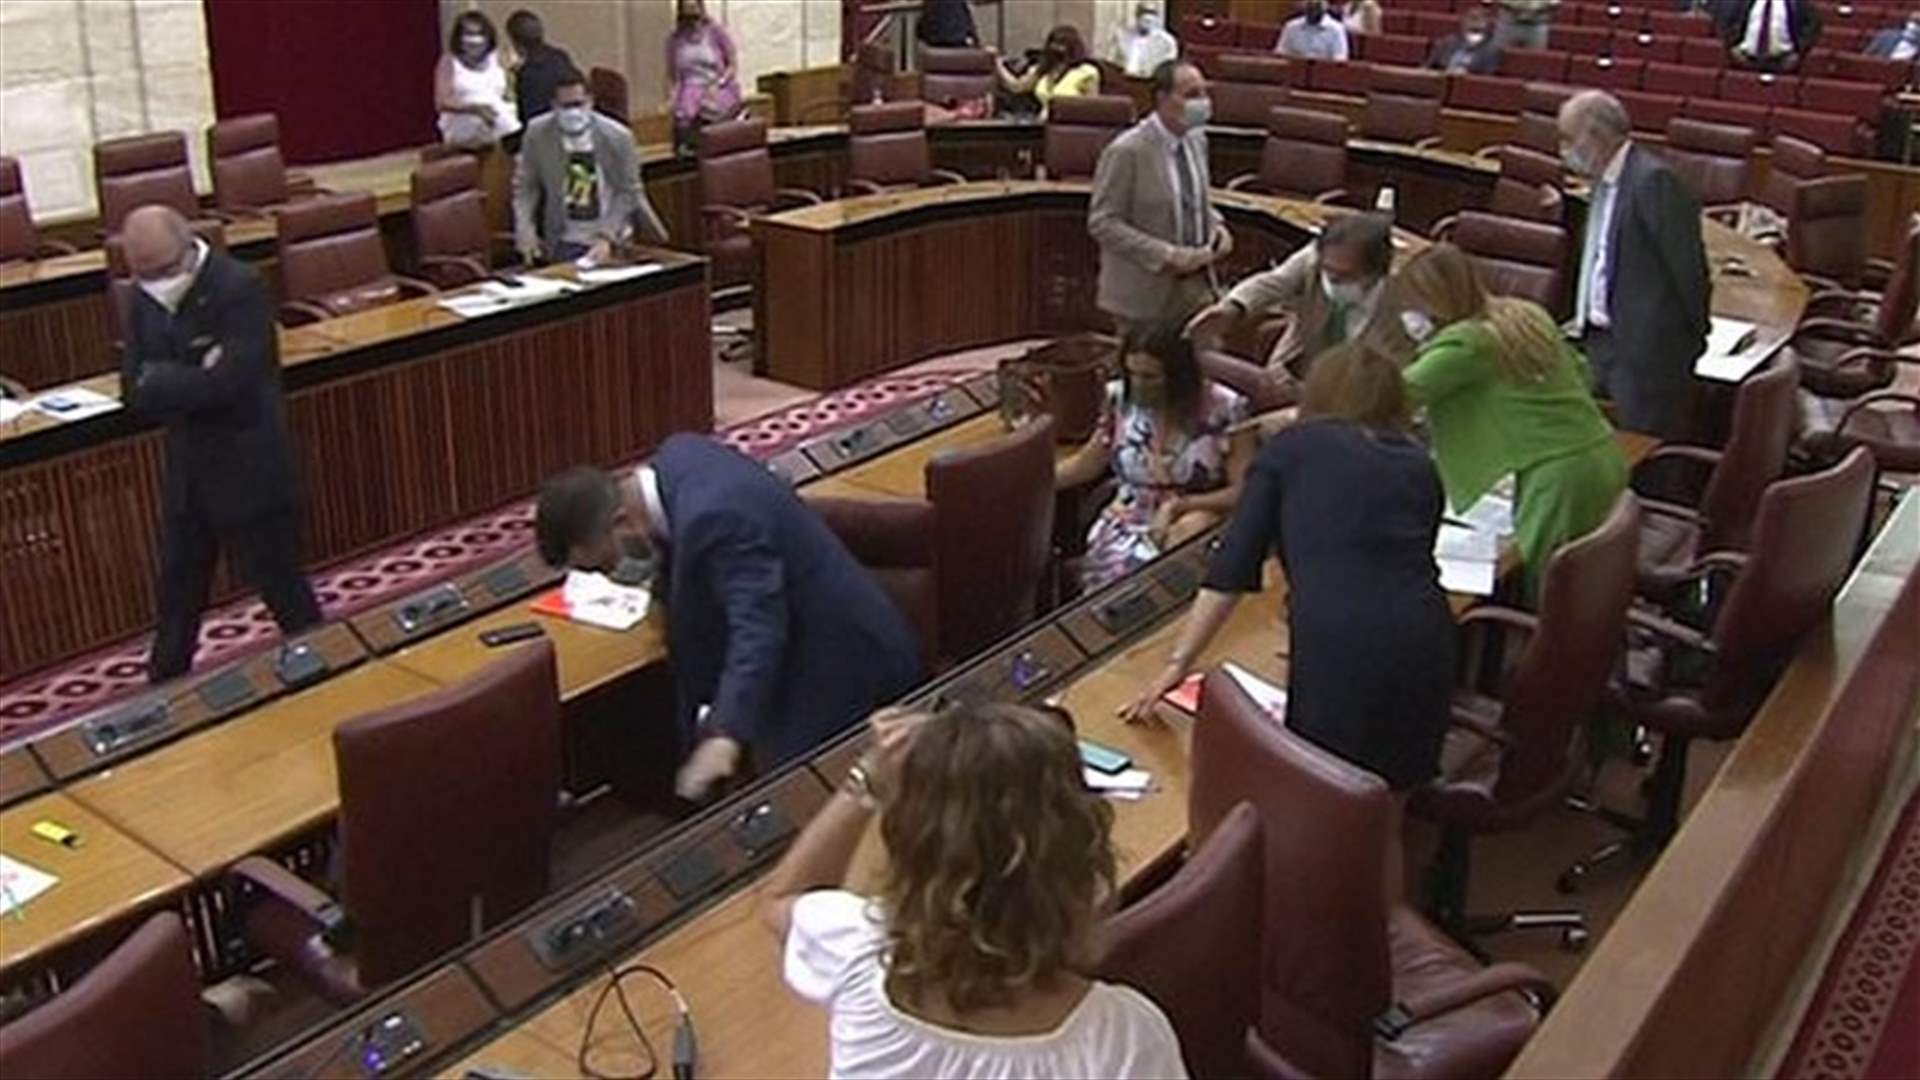 ضيف غير مرحّب به... فأر ضخم يثير هلعاً كبيراً خلال جلسة برلمان في إسبانيا (فيديو)